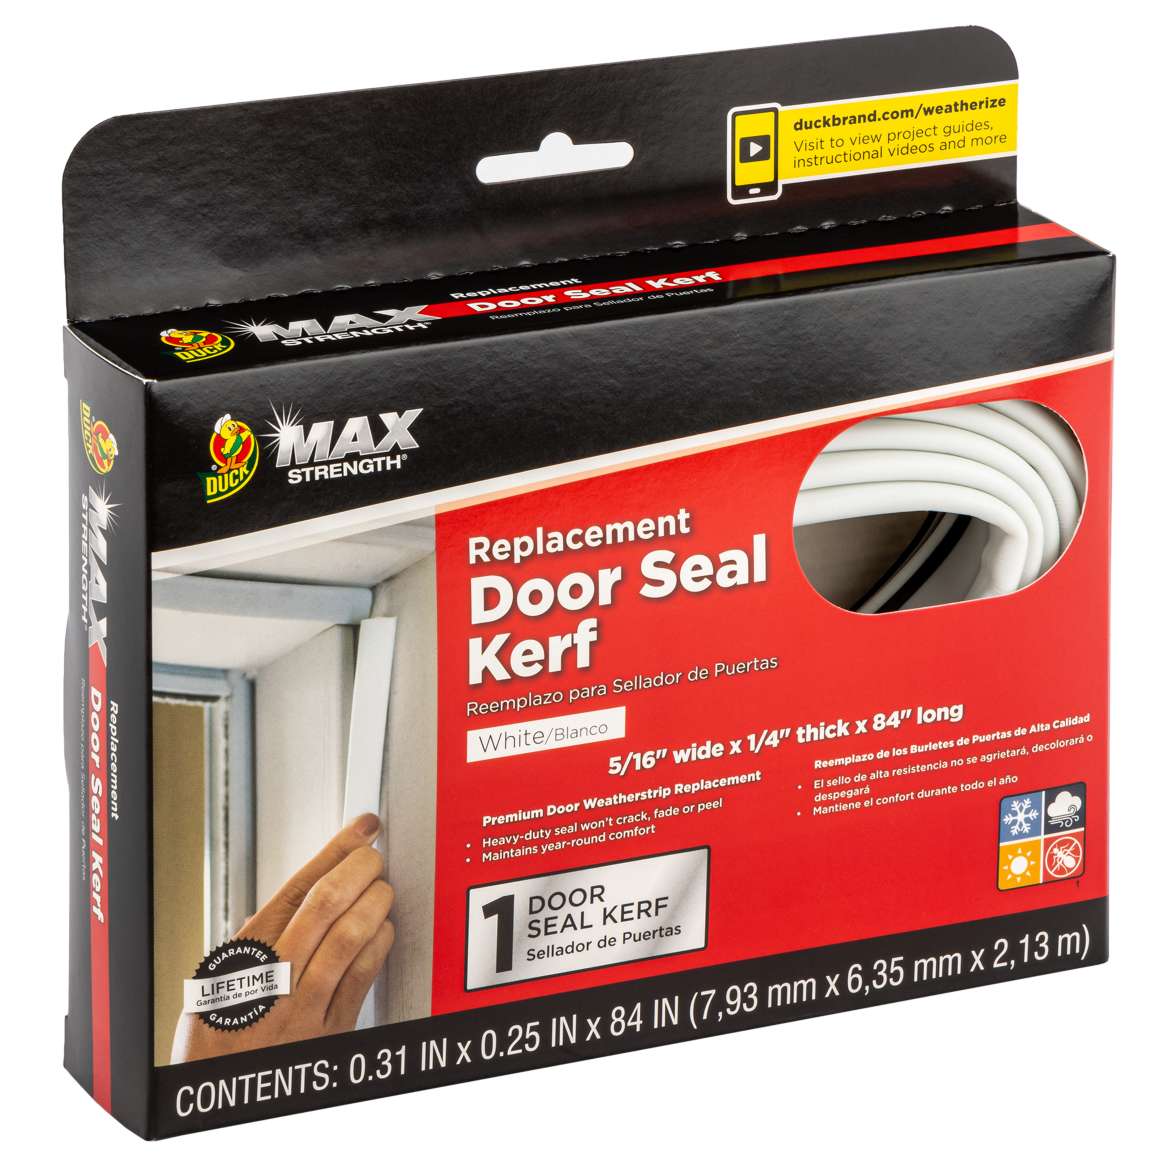 Max Strength Replacement Door Seal